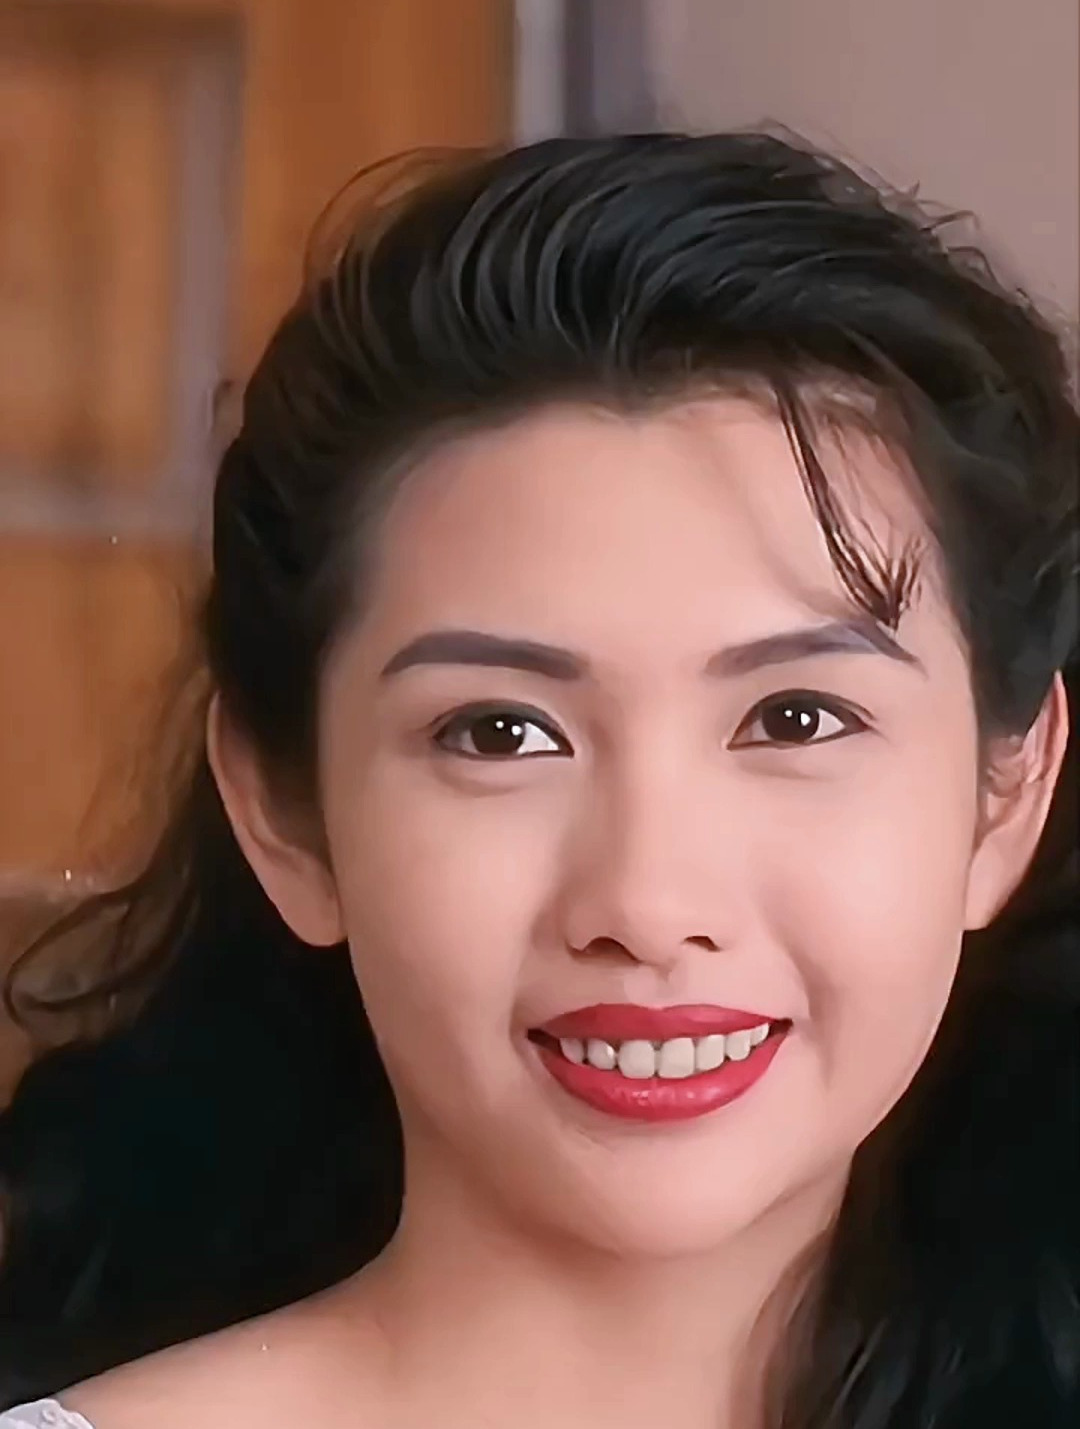 邱淑贞香港电影中的性感女神,既天真可爱,又女人味十足